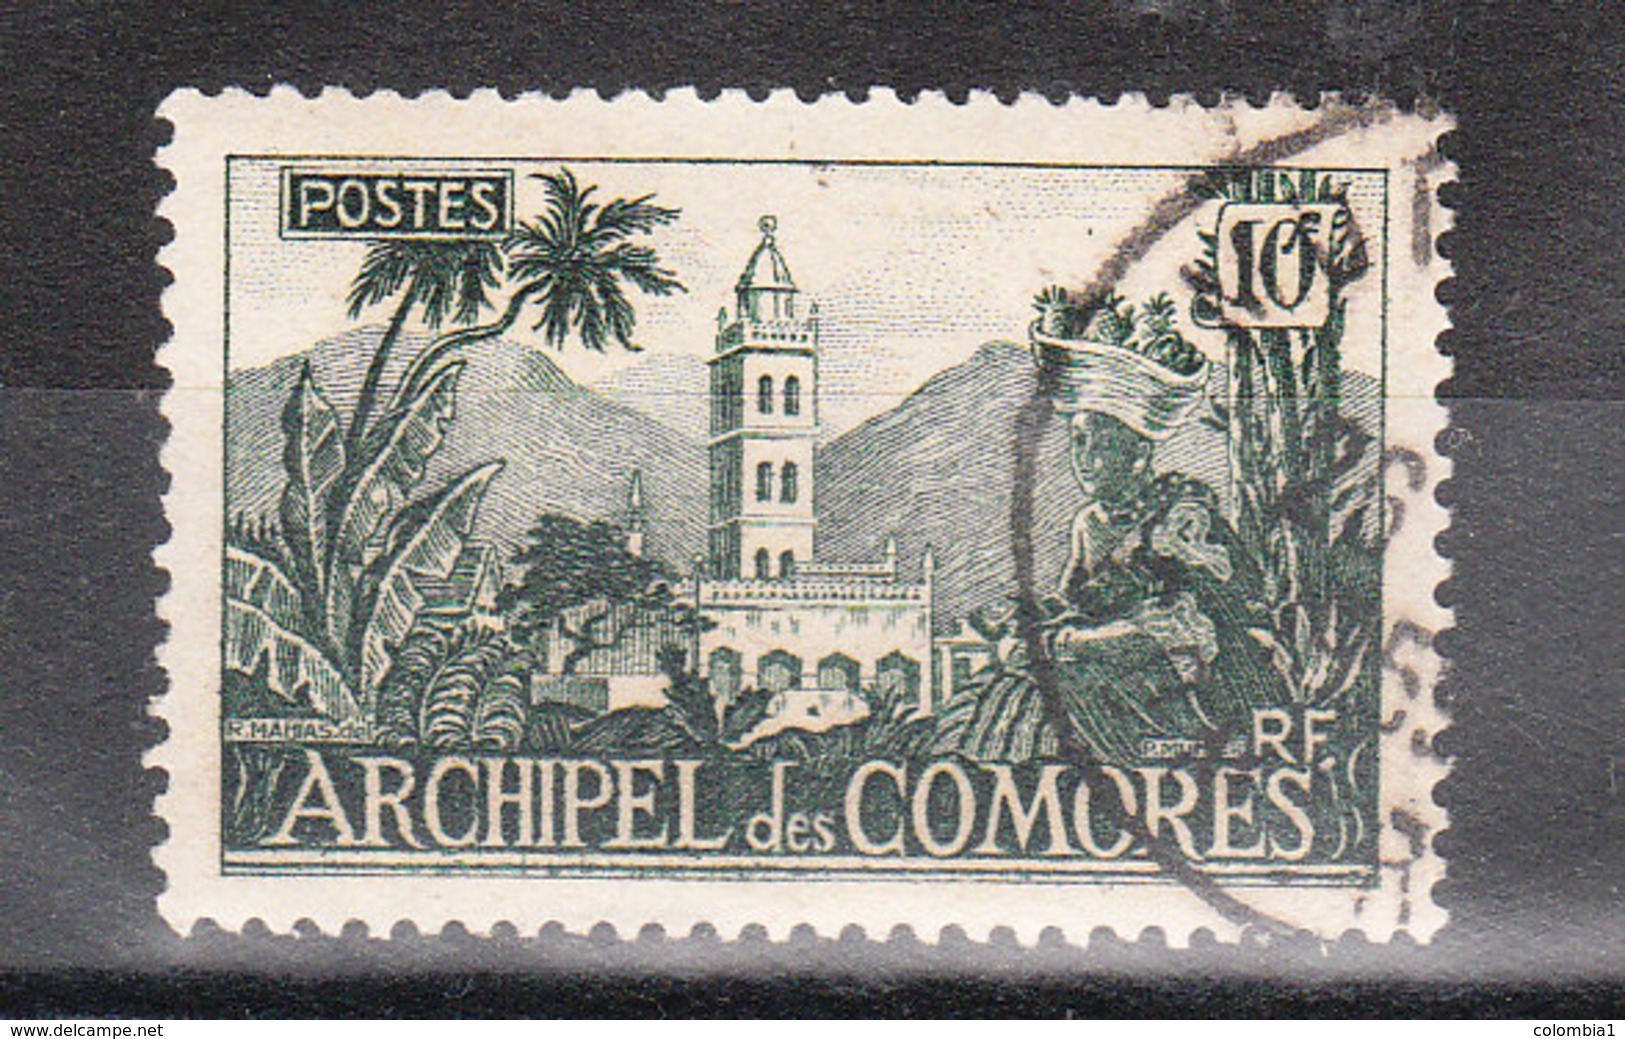 COMORES YT 8 Oblitéré MADAGASCAR 1950 - Used Stamps